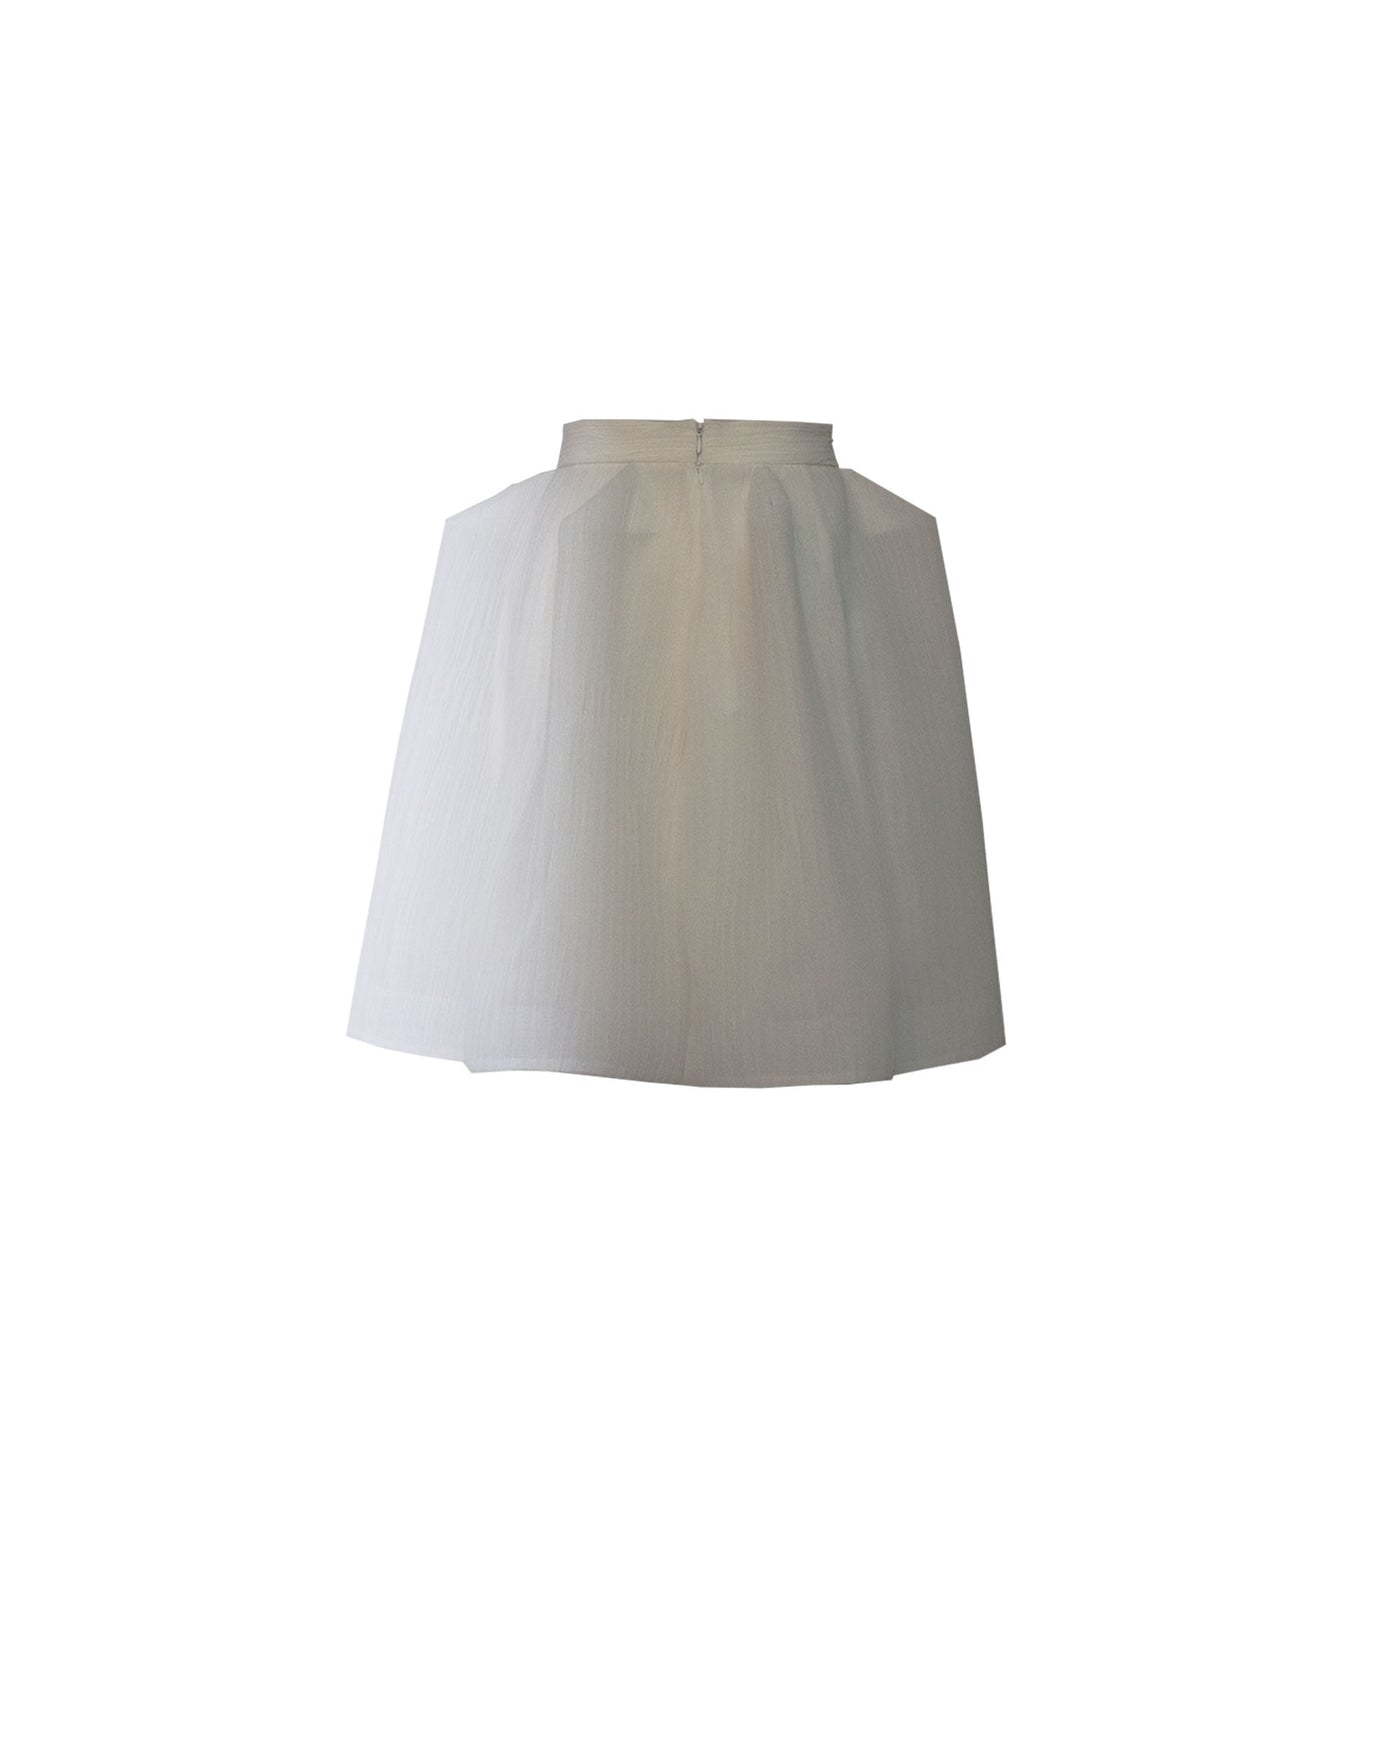 Structured Short White Skirt